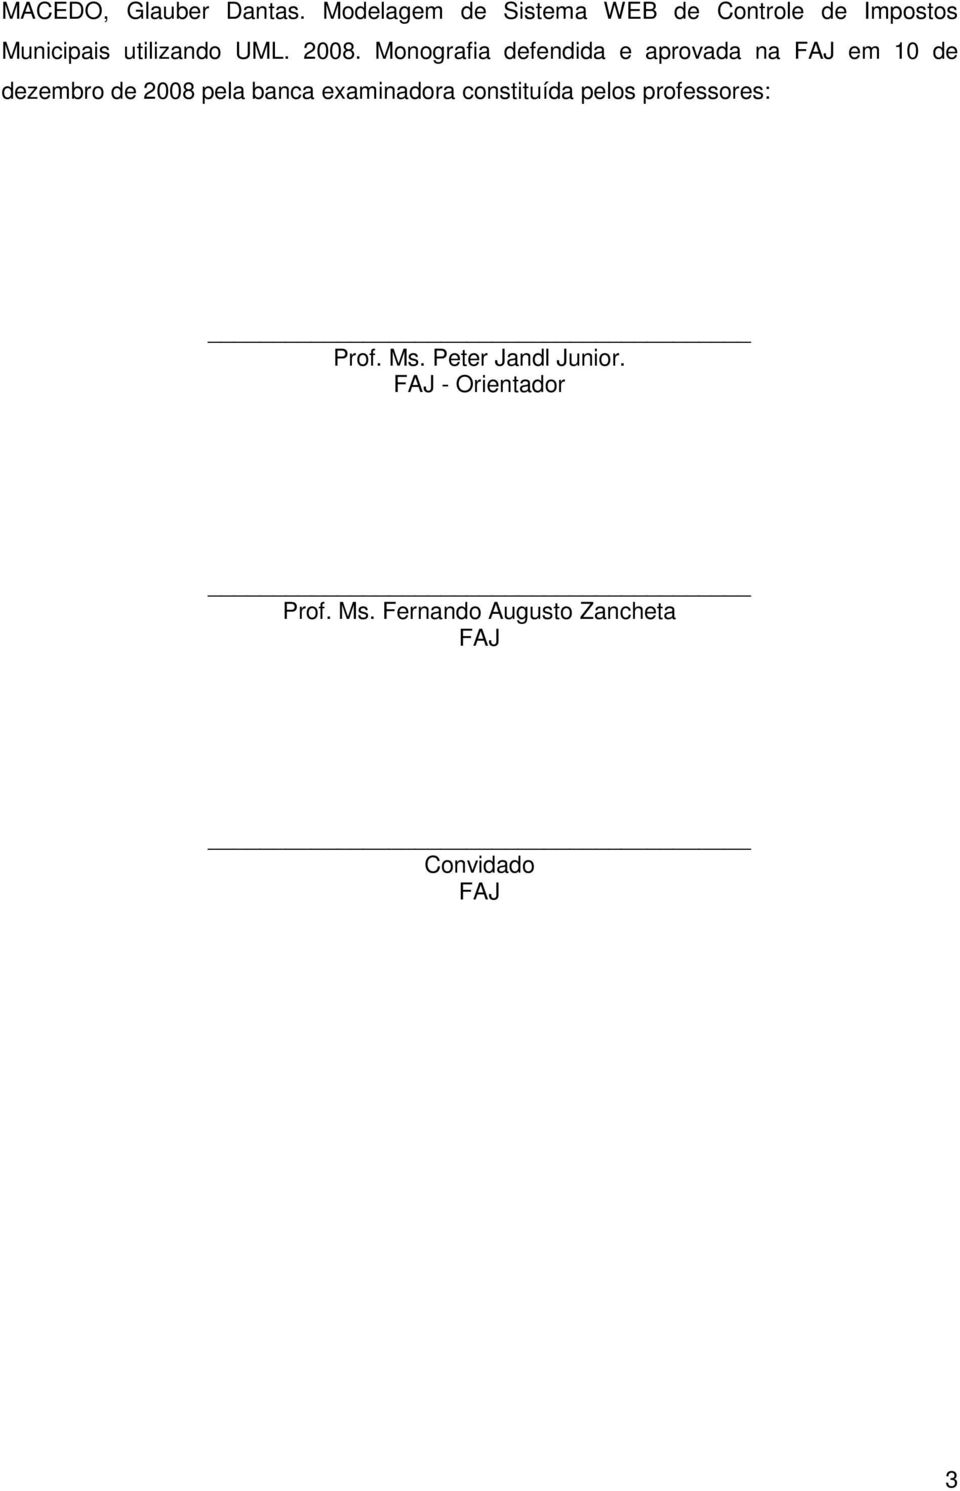 Monografia defendida e aprovada na FAJ em 10 de dezembro de 2008 pela banca